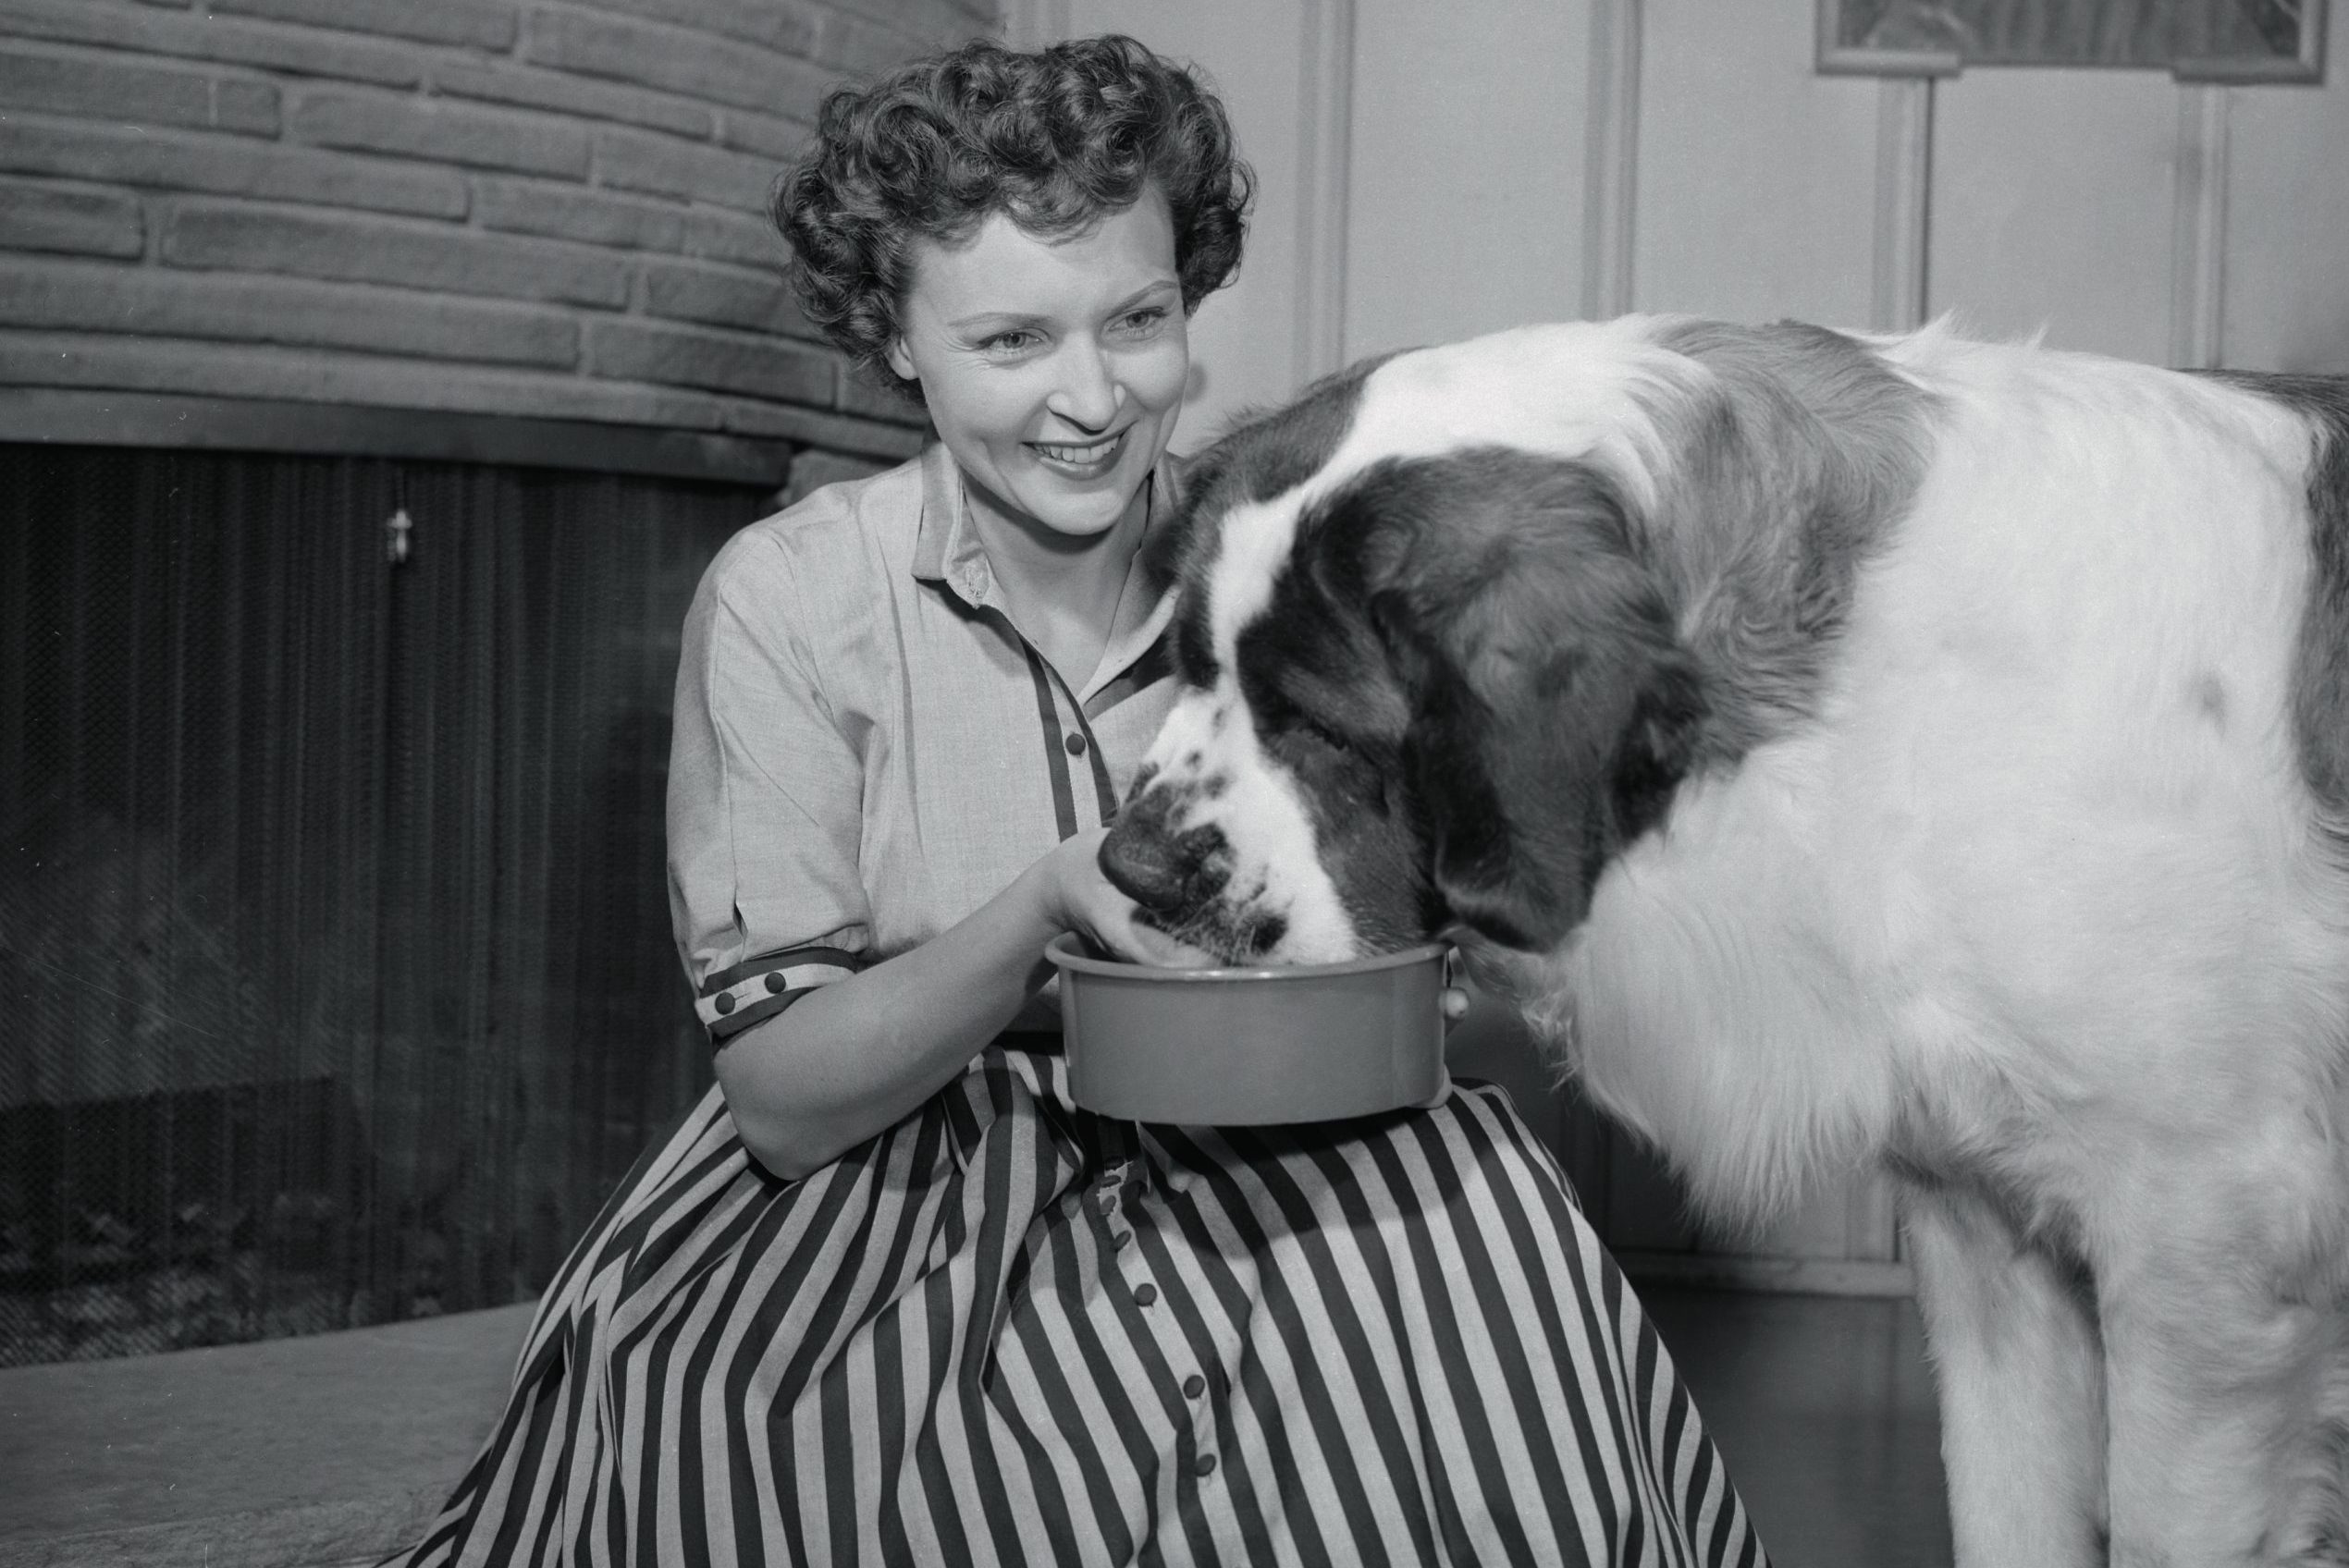 Betty White Feeding Her Dog